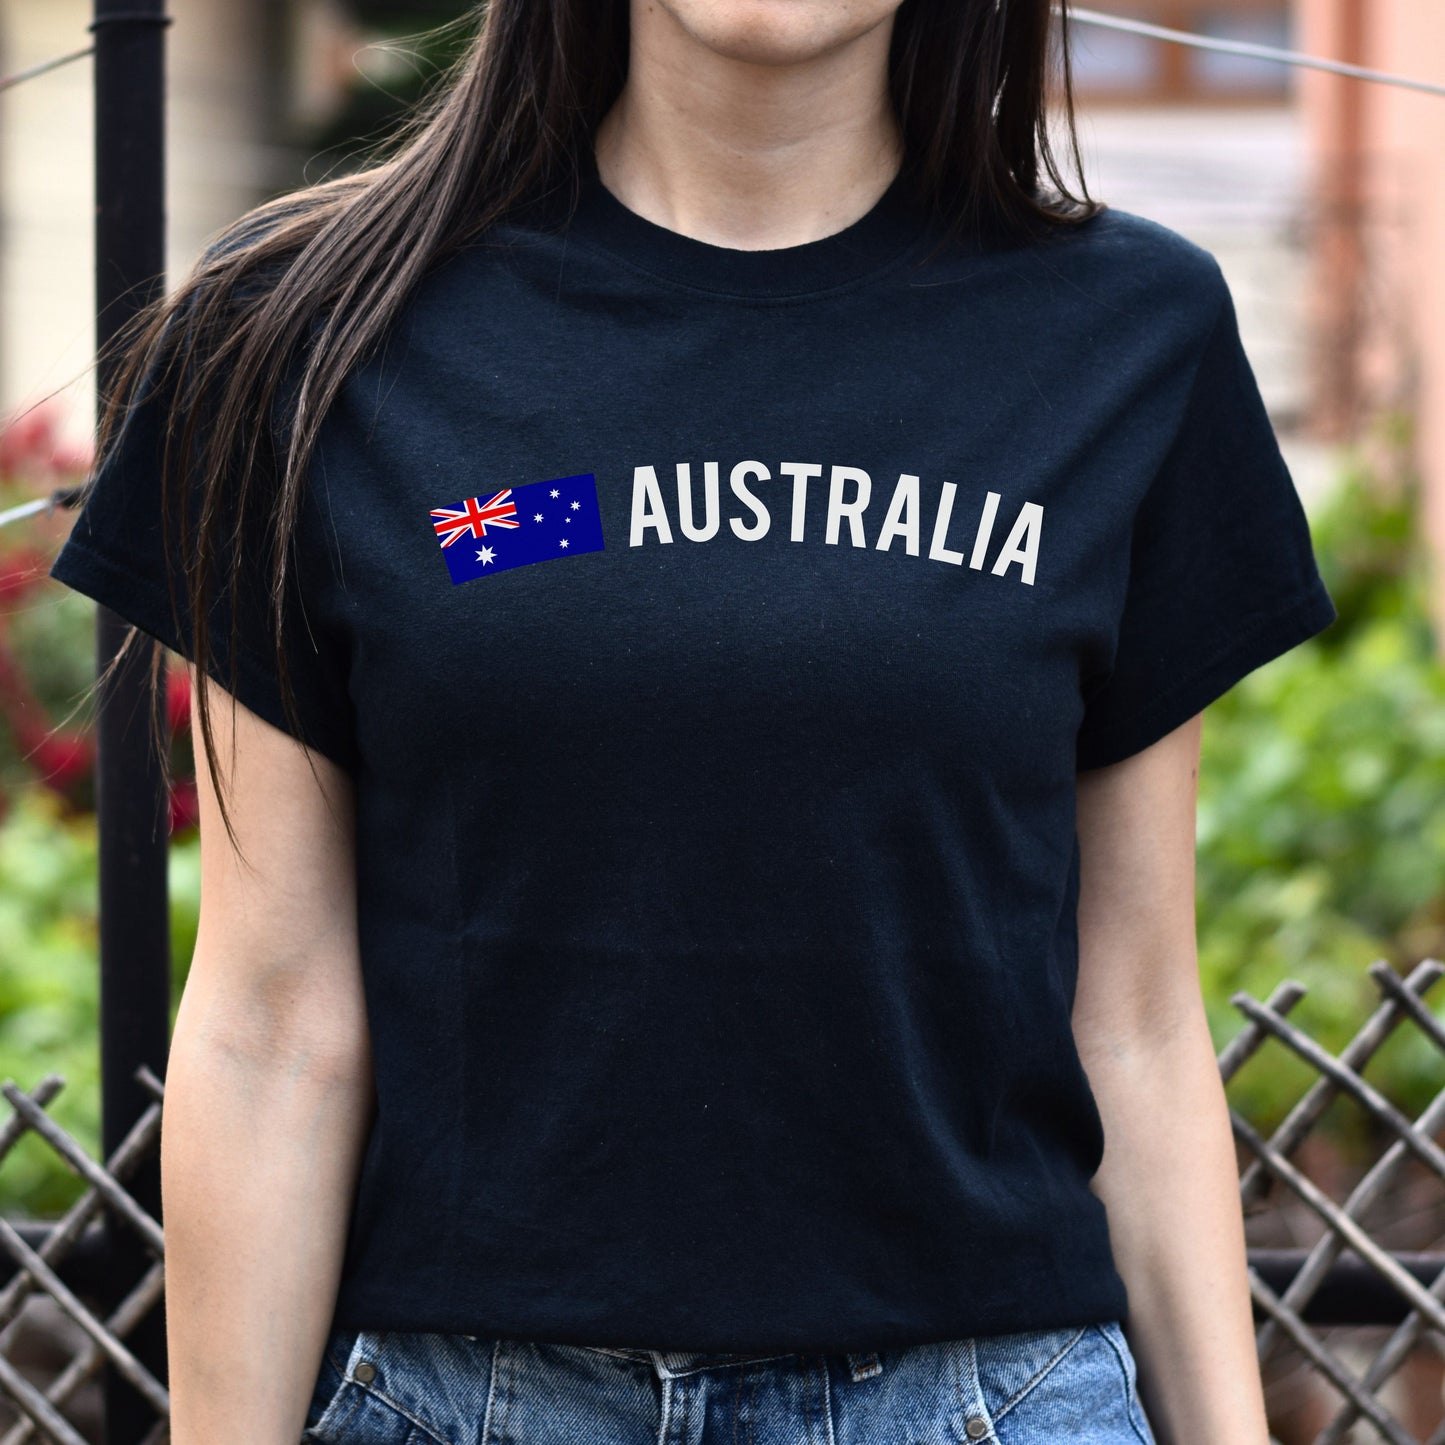 Australia Unisex T-shirt gift Australian flag tee Sydney White Black Dark Heather-Black-Family-Gift-Planet